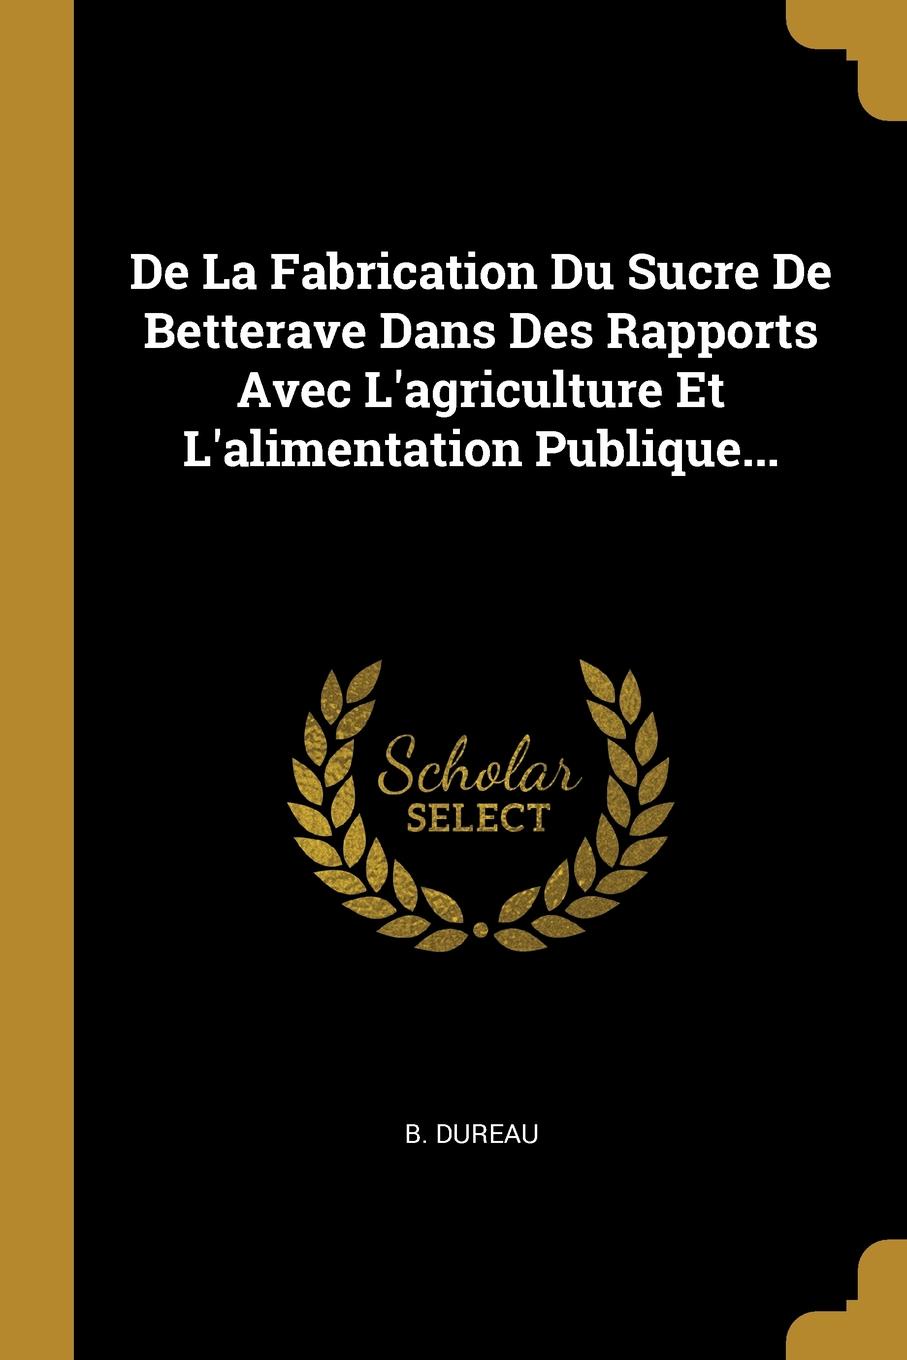 De La Fabrication Du Sucre De Betterave Dans Des Rapports Avec L.agriculture Et L.alimentation Publique...